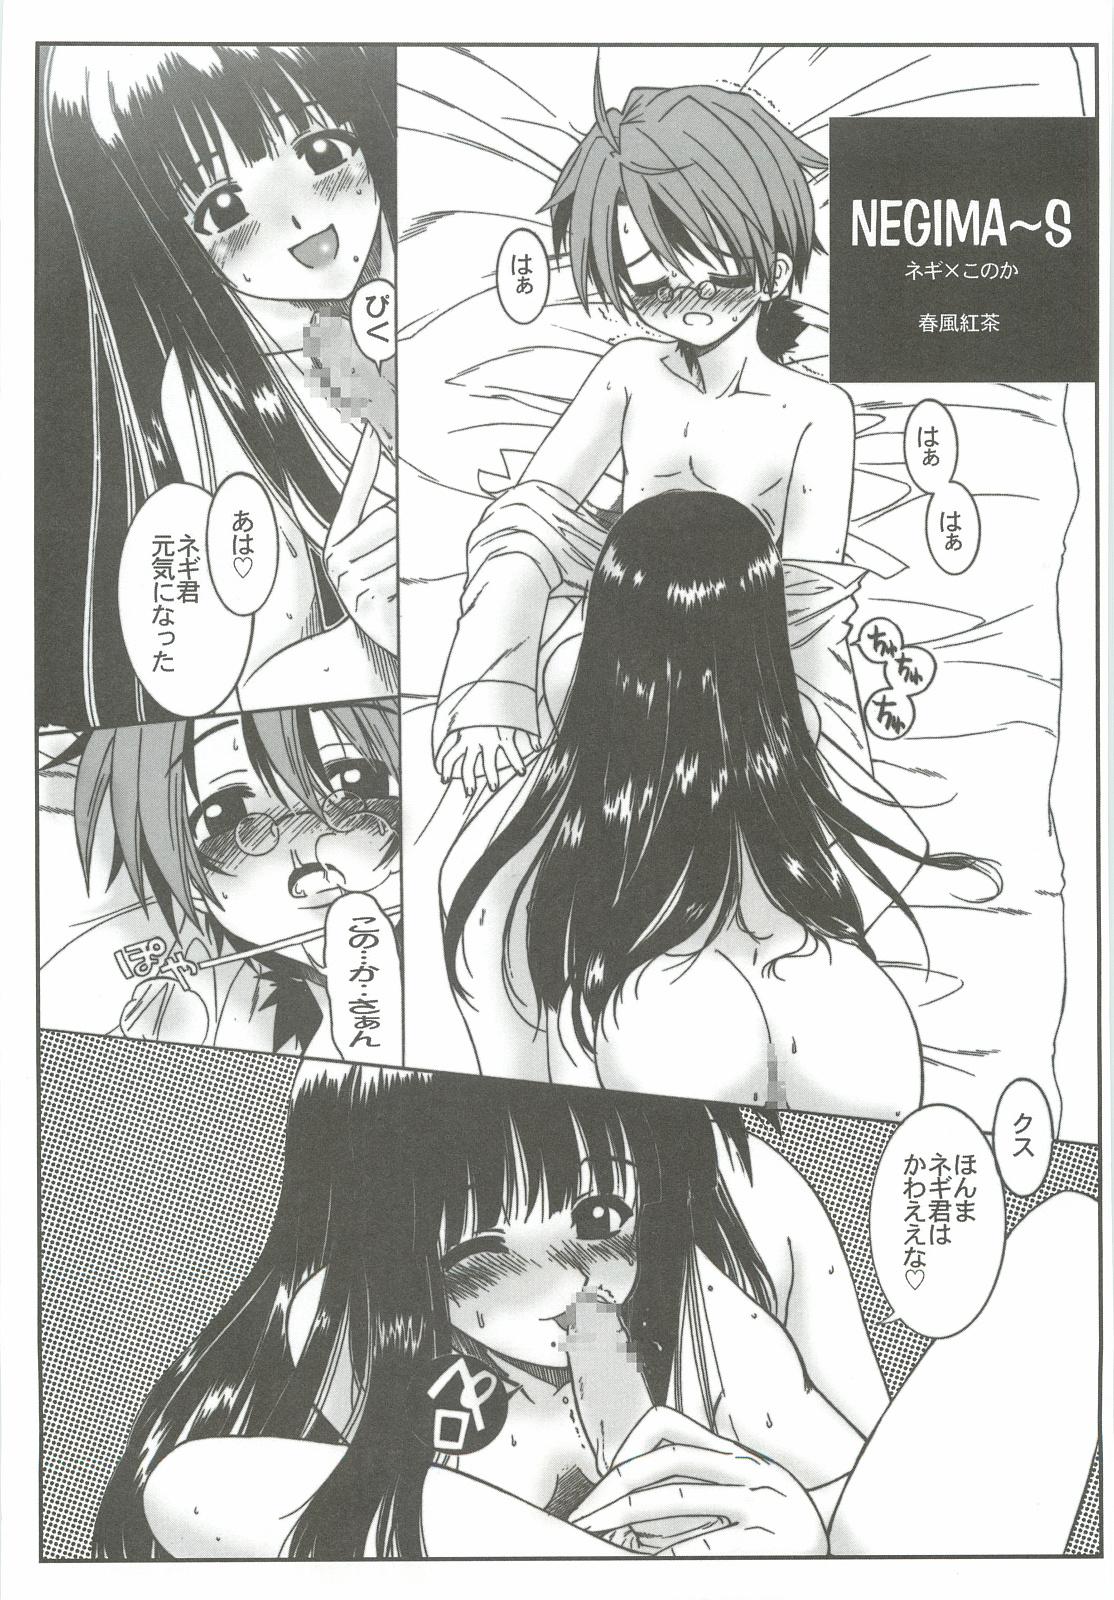 4some Zoku Nangoku Shuka - Mahou sensei negima Love hina Hot Women Having Sex - Page 8